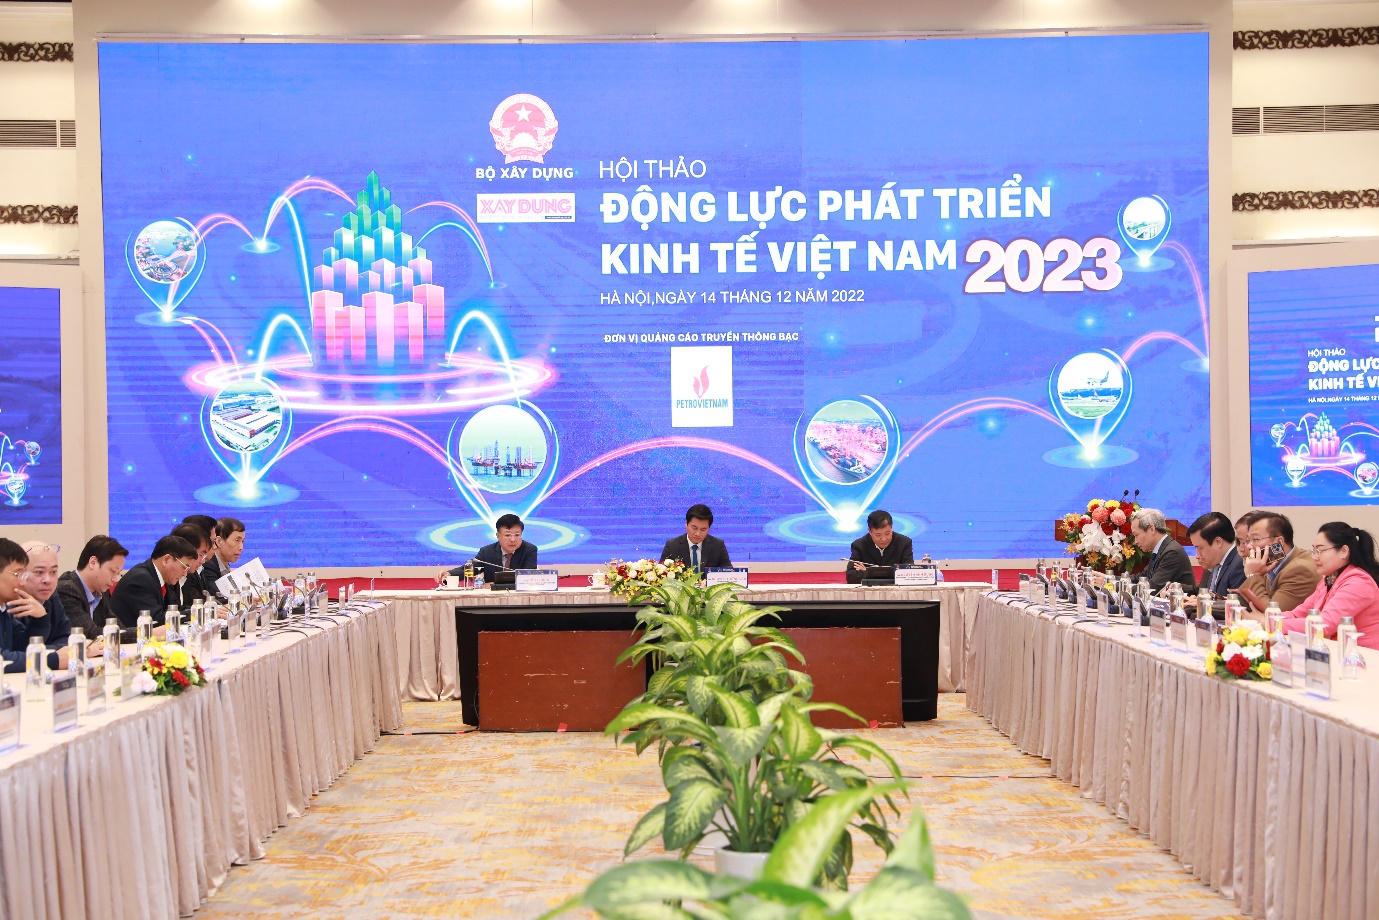 Động lực, giải pháp nào phát triển kinh tế Việt Nam ổn định, bền vững - 3